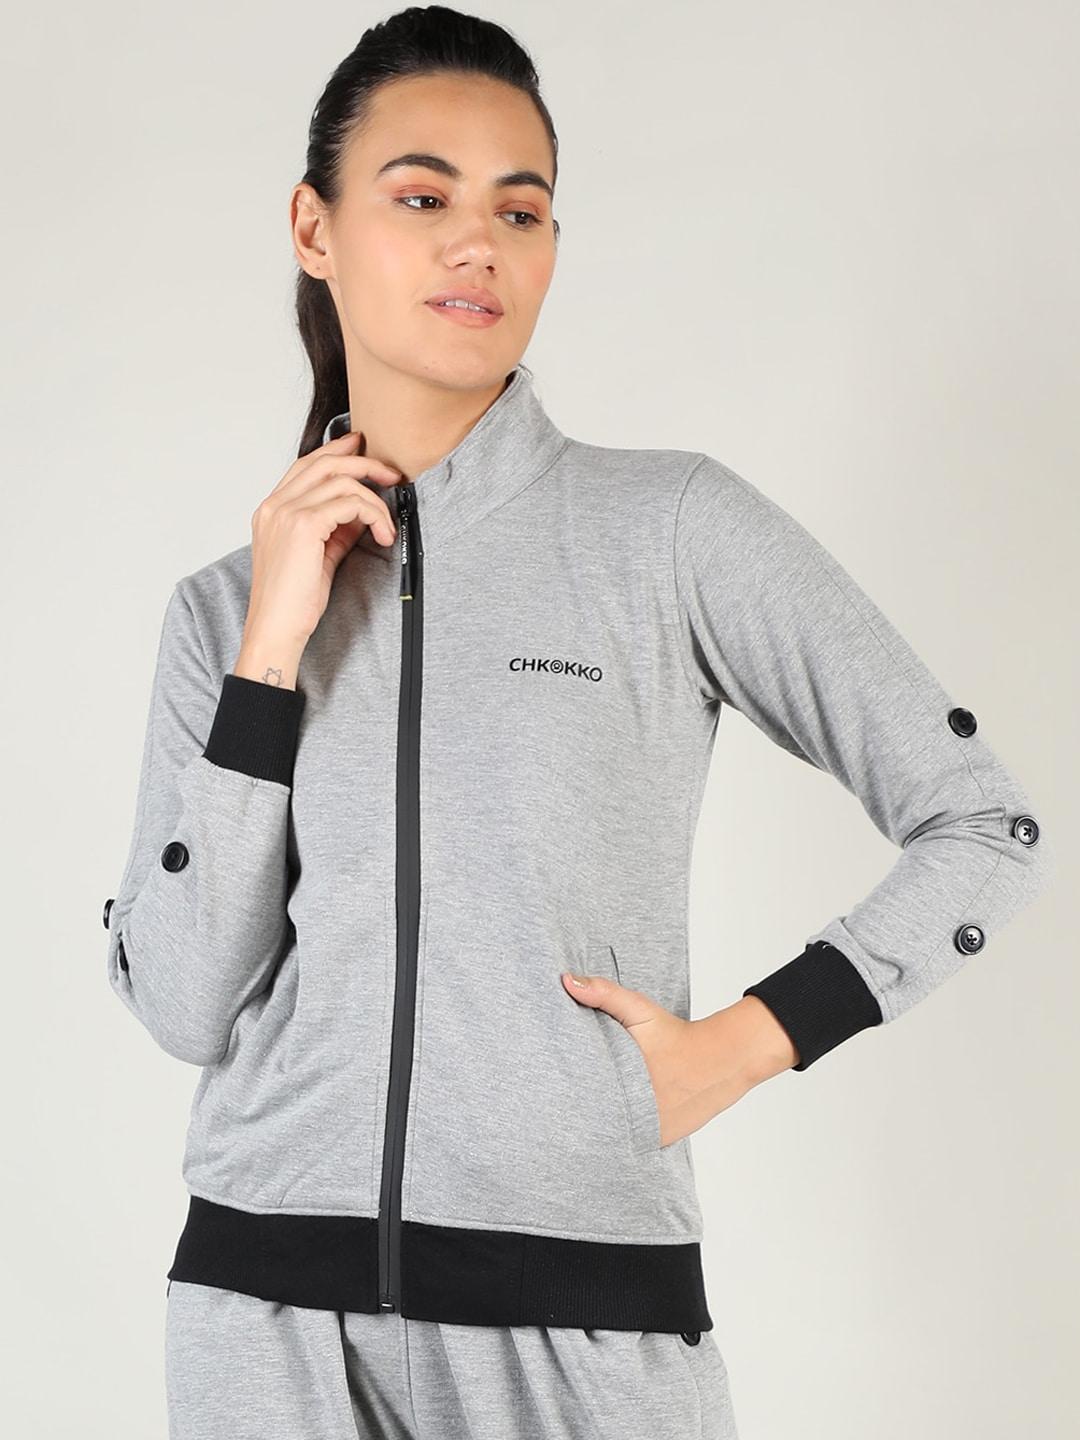 chkokko-women-grey-training-or-gym-sporty-jacket-with-patchwork